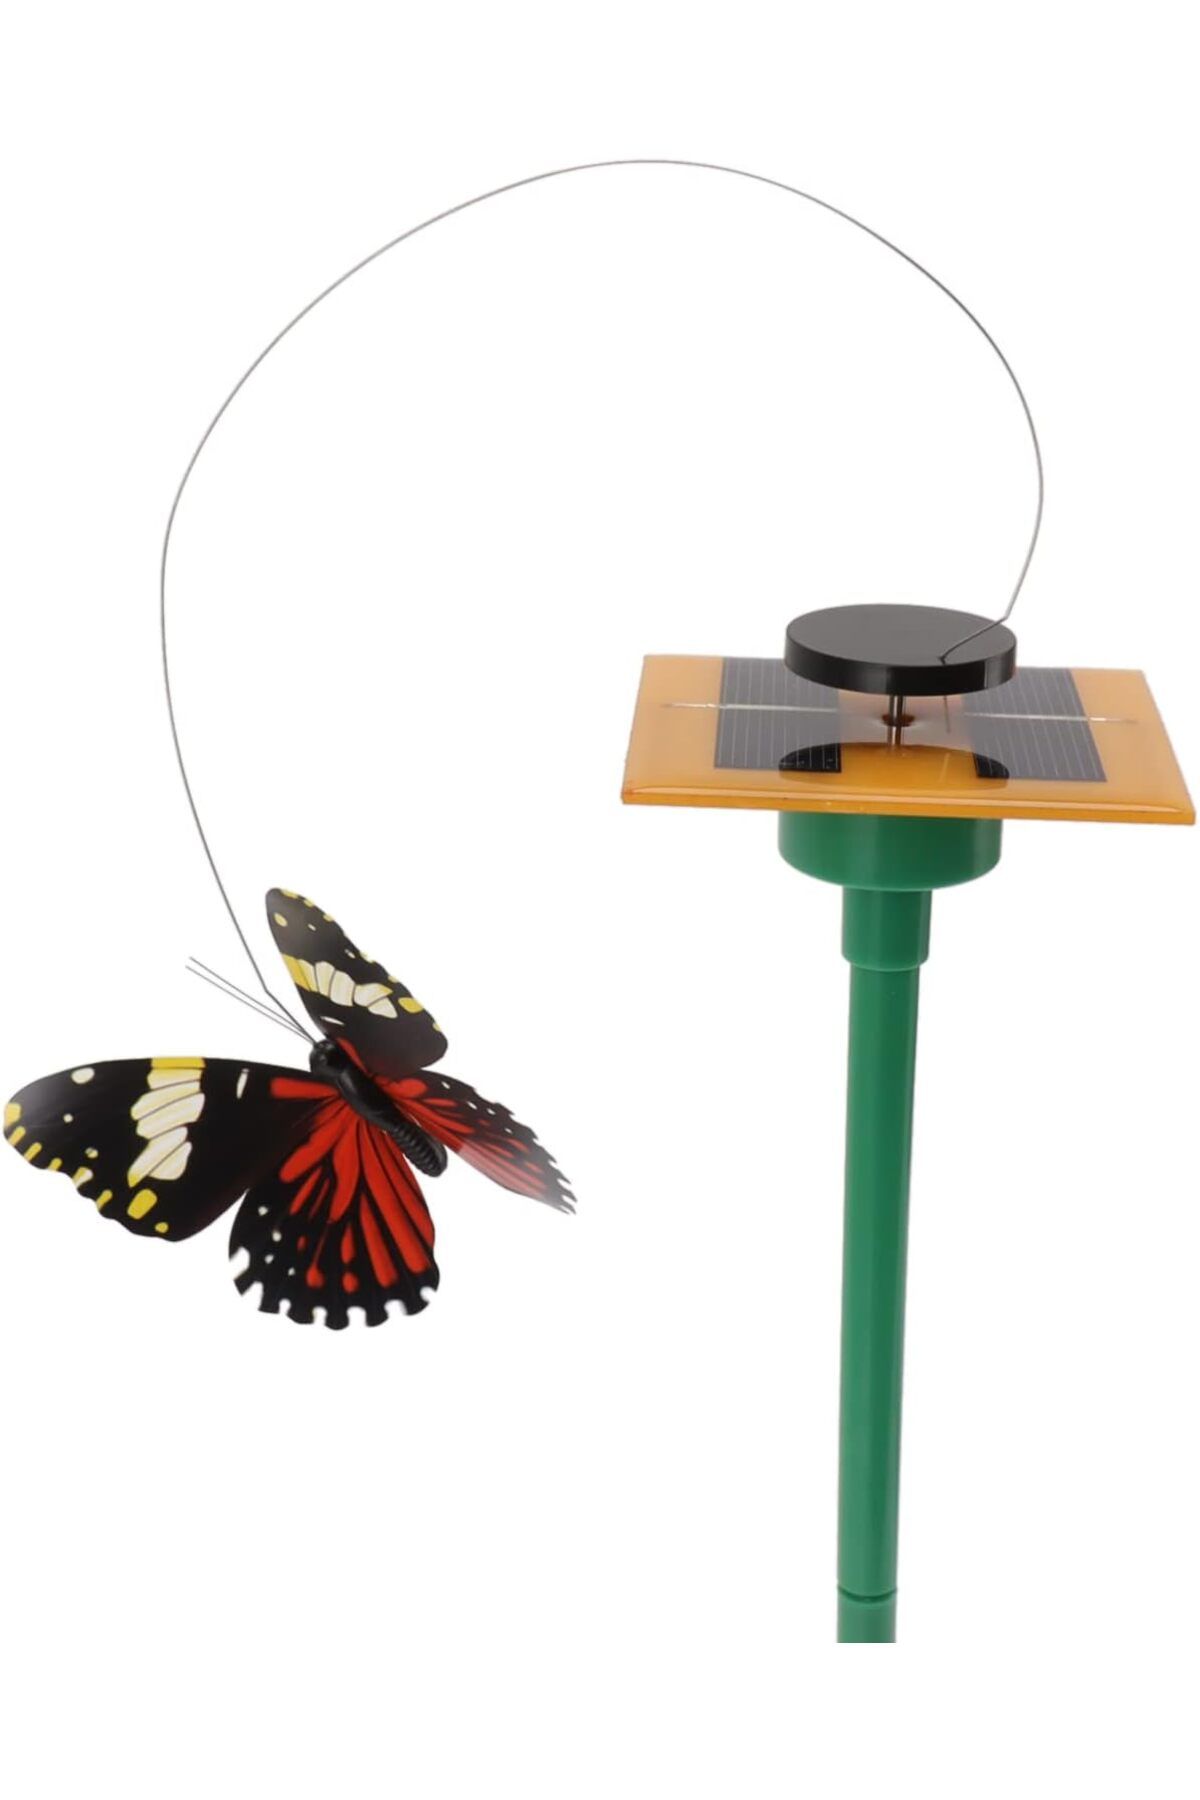 RICHIE Güneş enerjili uçuşan kelebekler saksı süsü bahçe süsü hediyelik kelekler